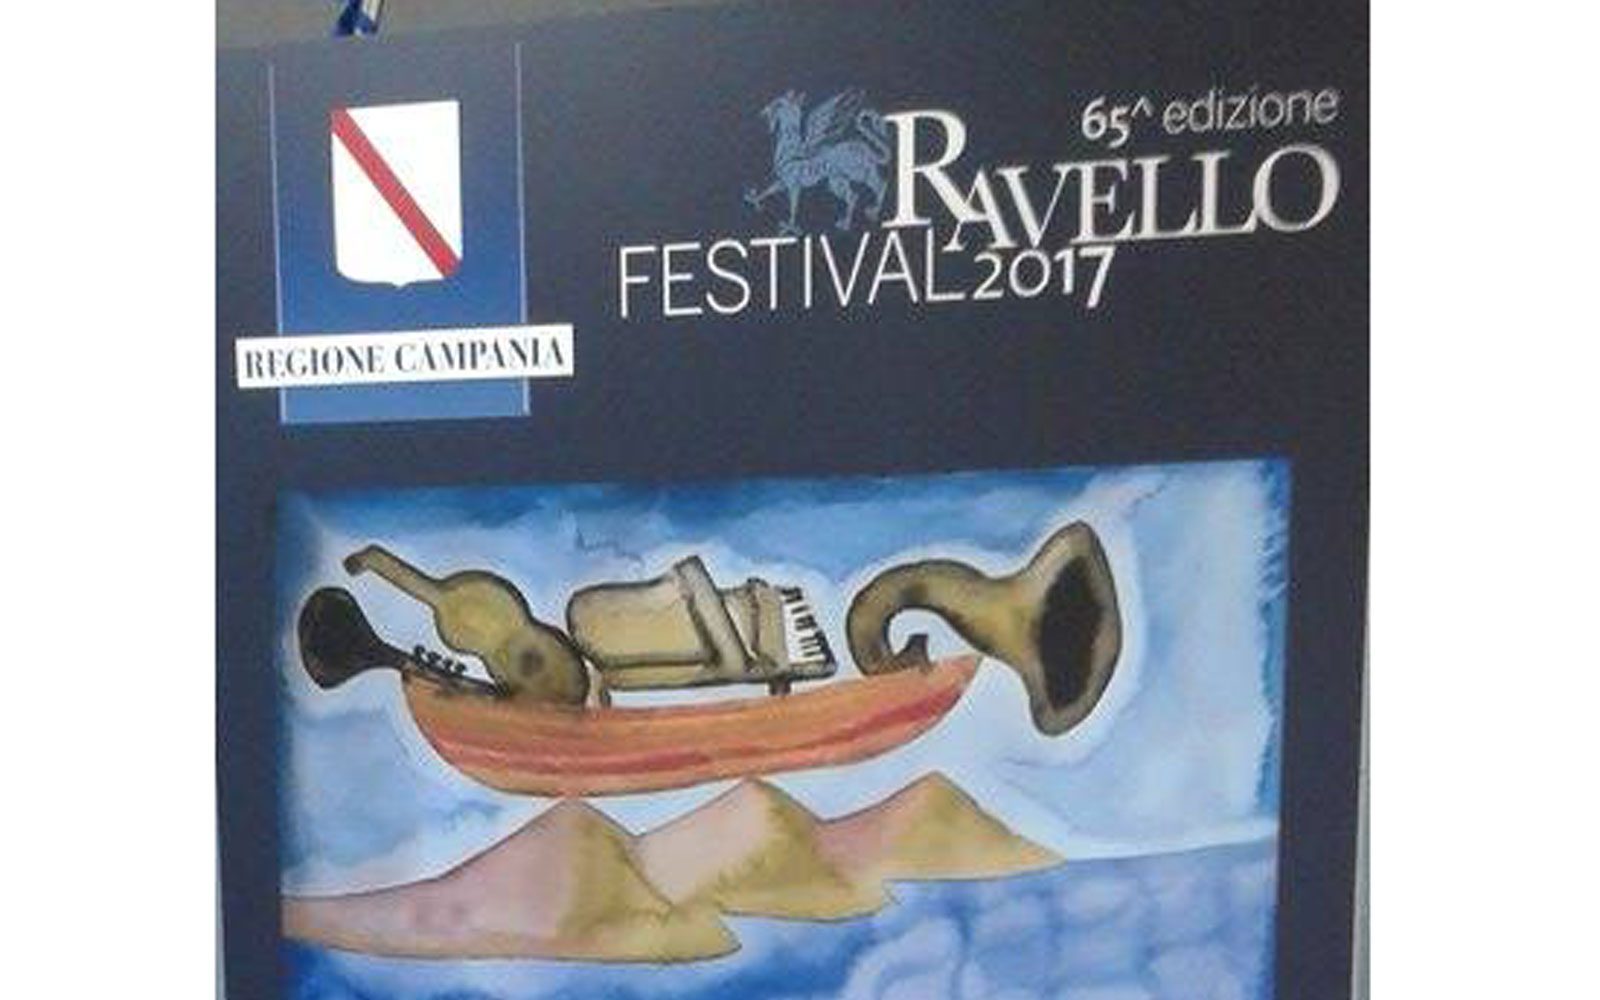 La locandina del Ravello Festival